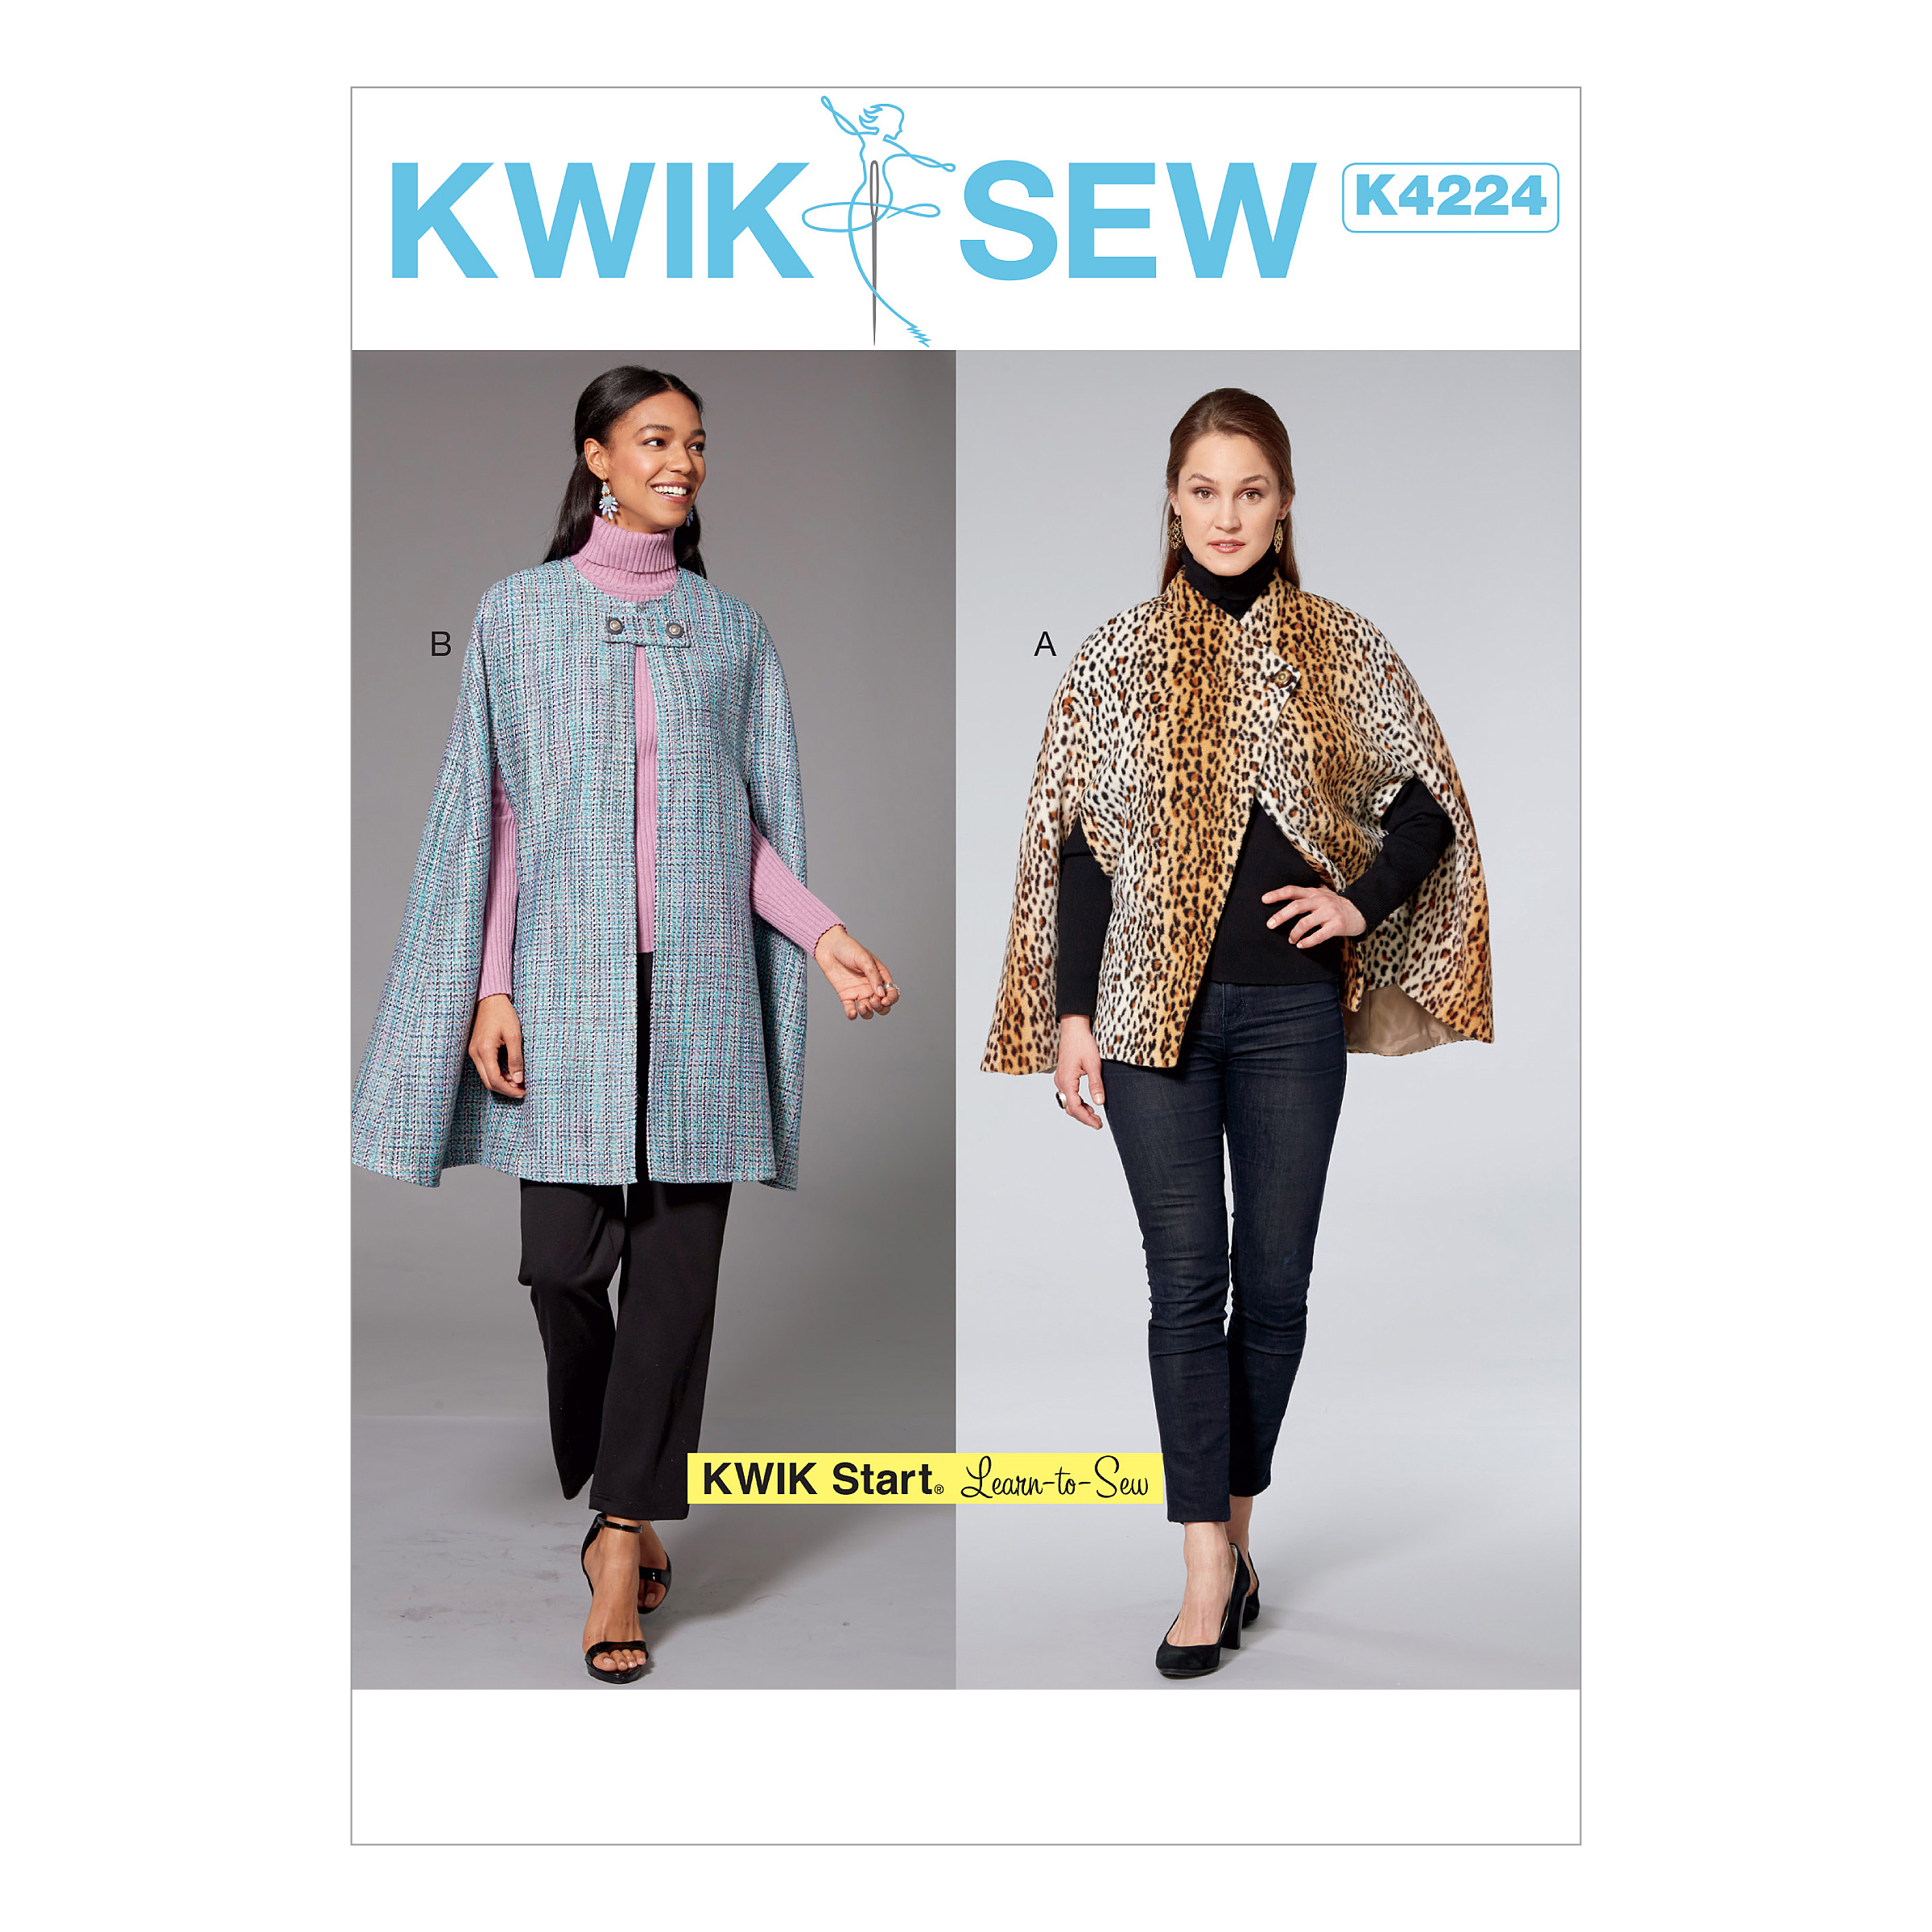 Kwik Sew Patterns K0235OS Bags Sewing Pattern, Tissue, Multi